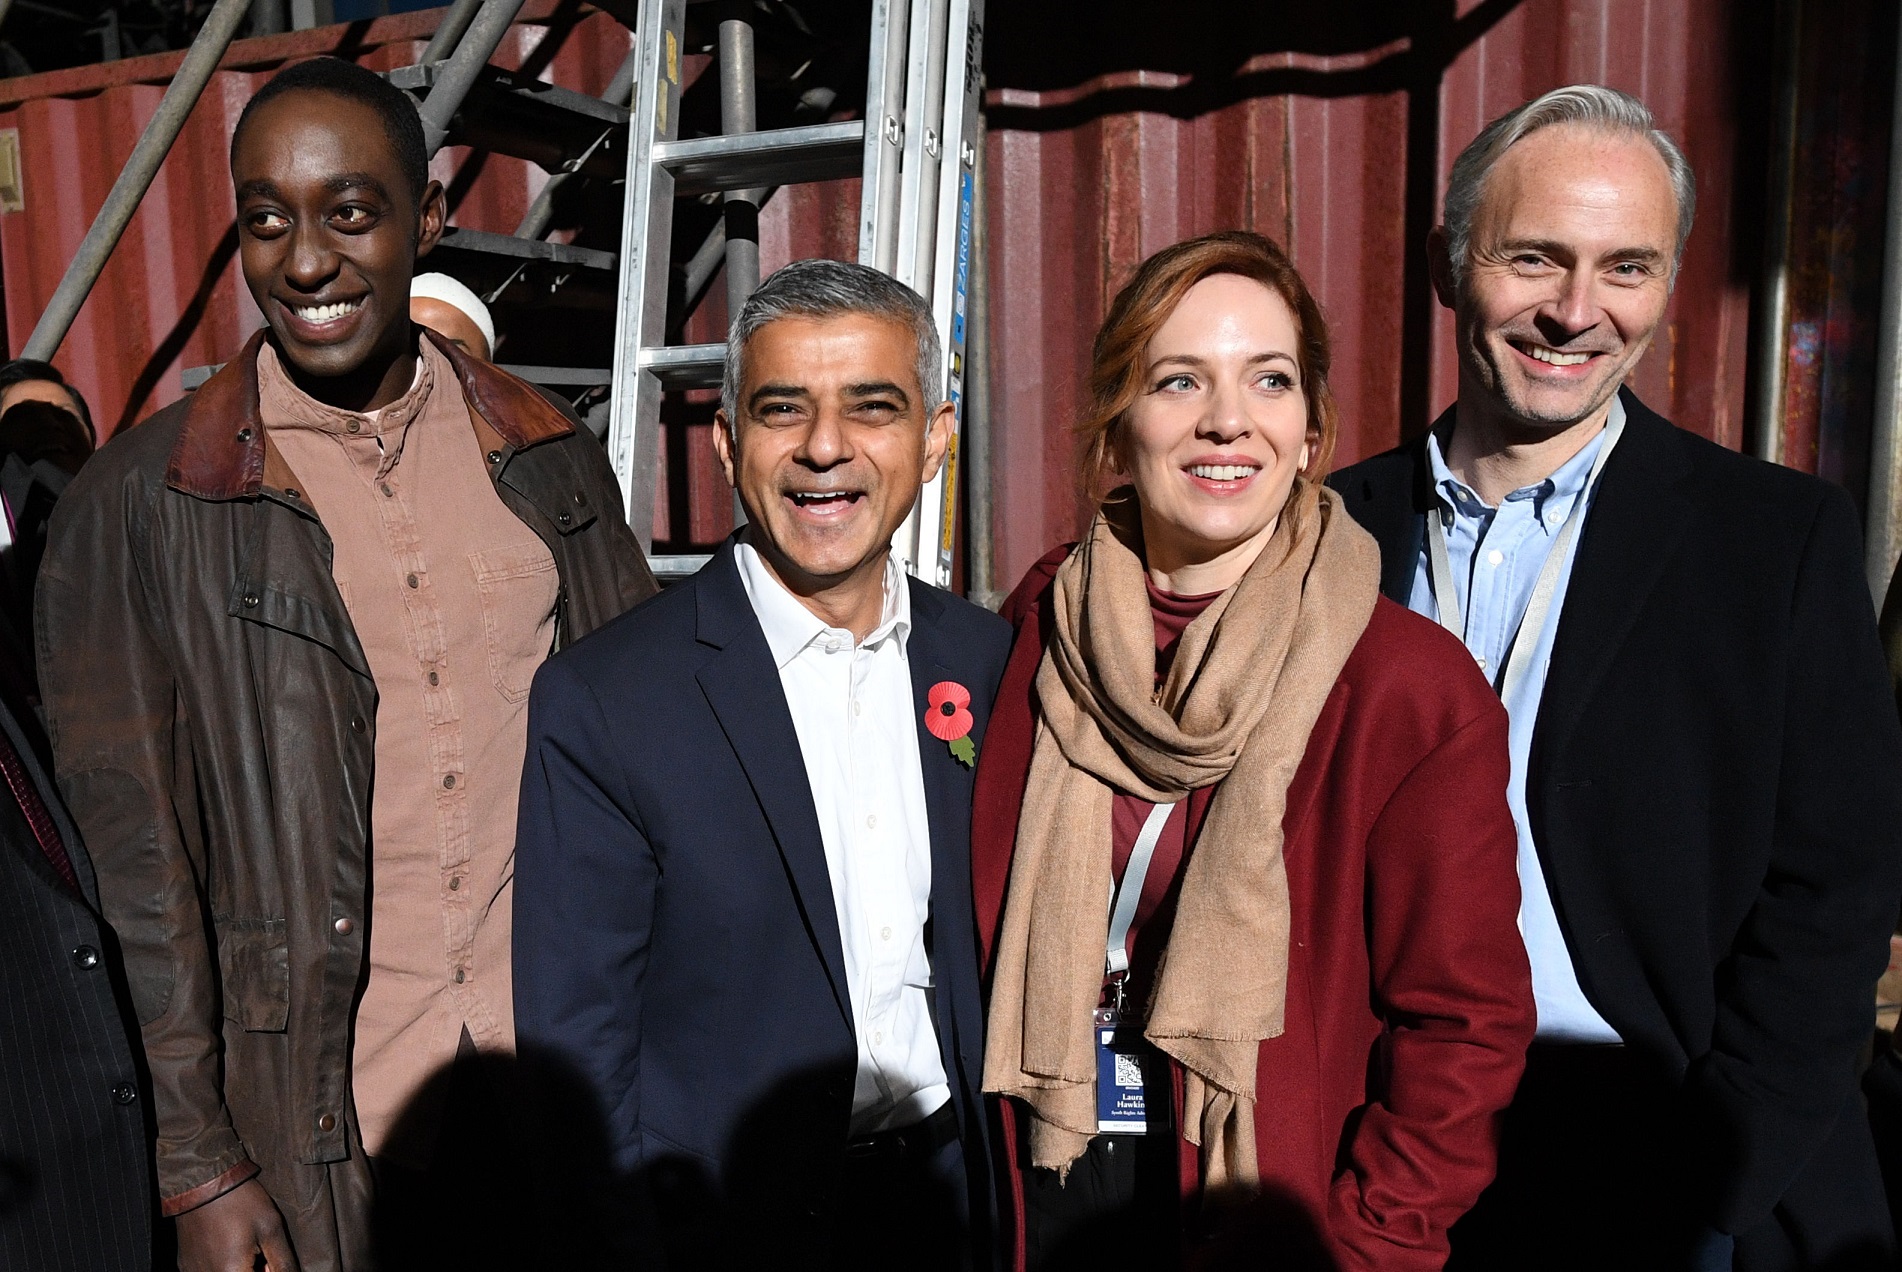 London Mayor Sadiq Khan meets Humans cast members Ivanno Jeremiah (left), Katherine Parkinson and Mark Bonnar (right) (Stefan Rousseau/PA)